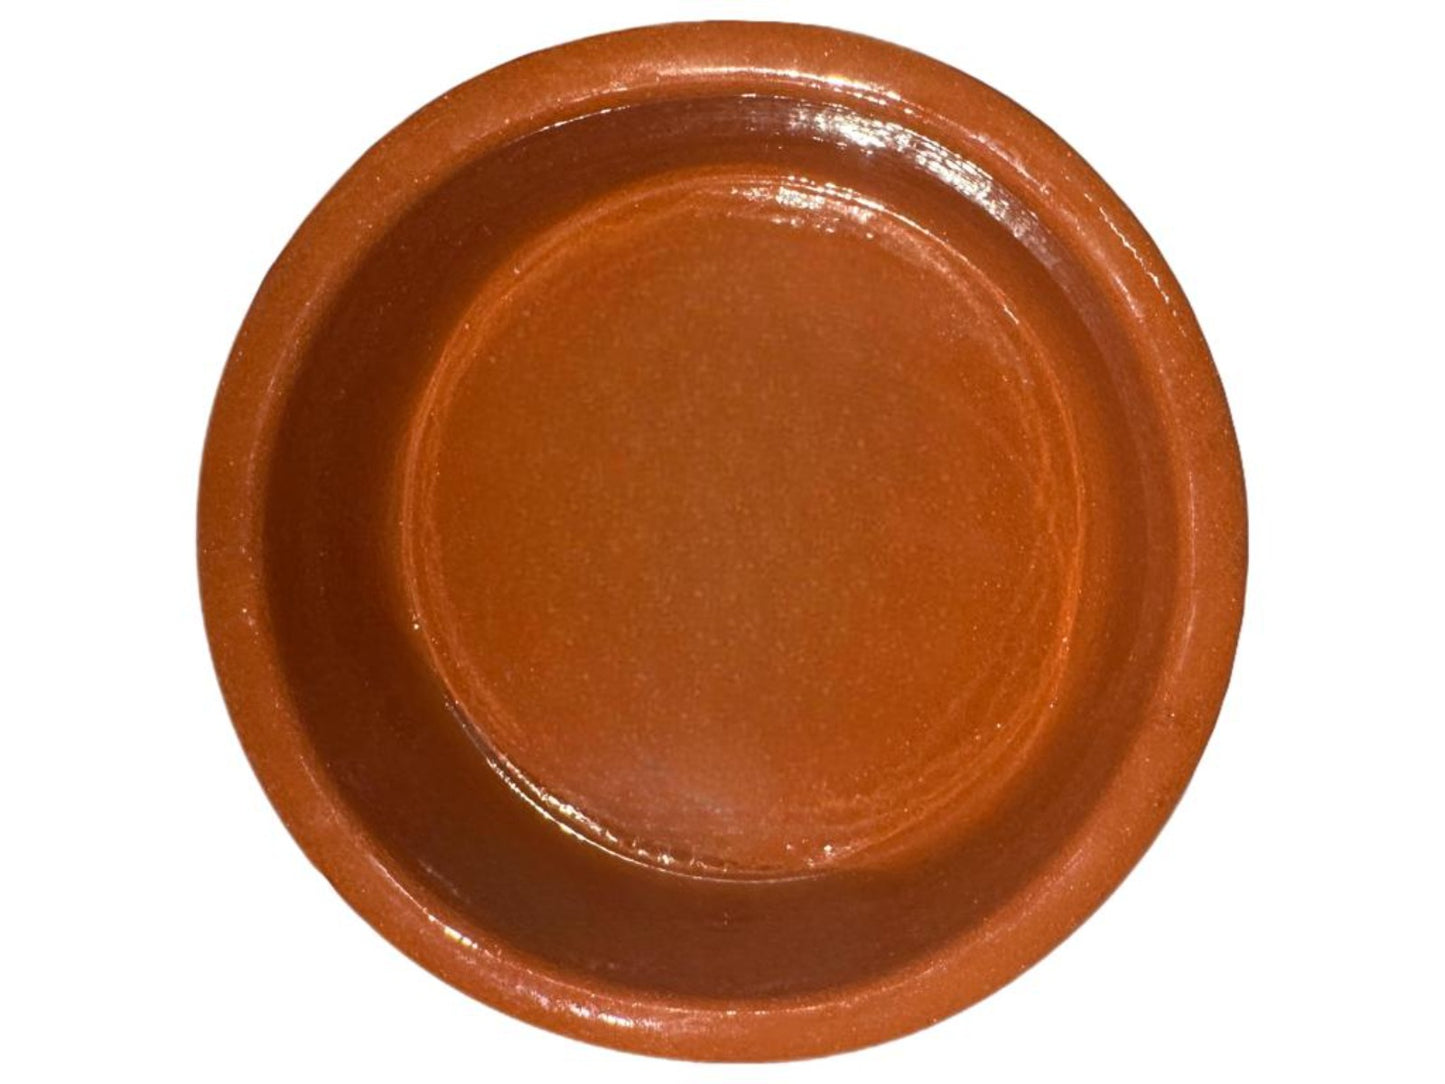 Ceramica Edgar Picas Portuguese Terracotta Tapas Dish 13cm